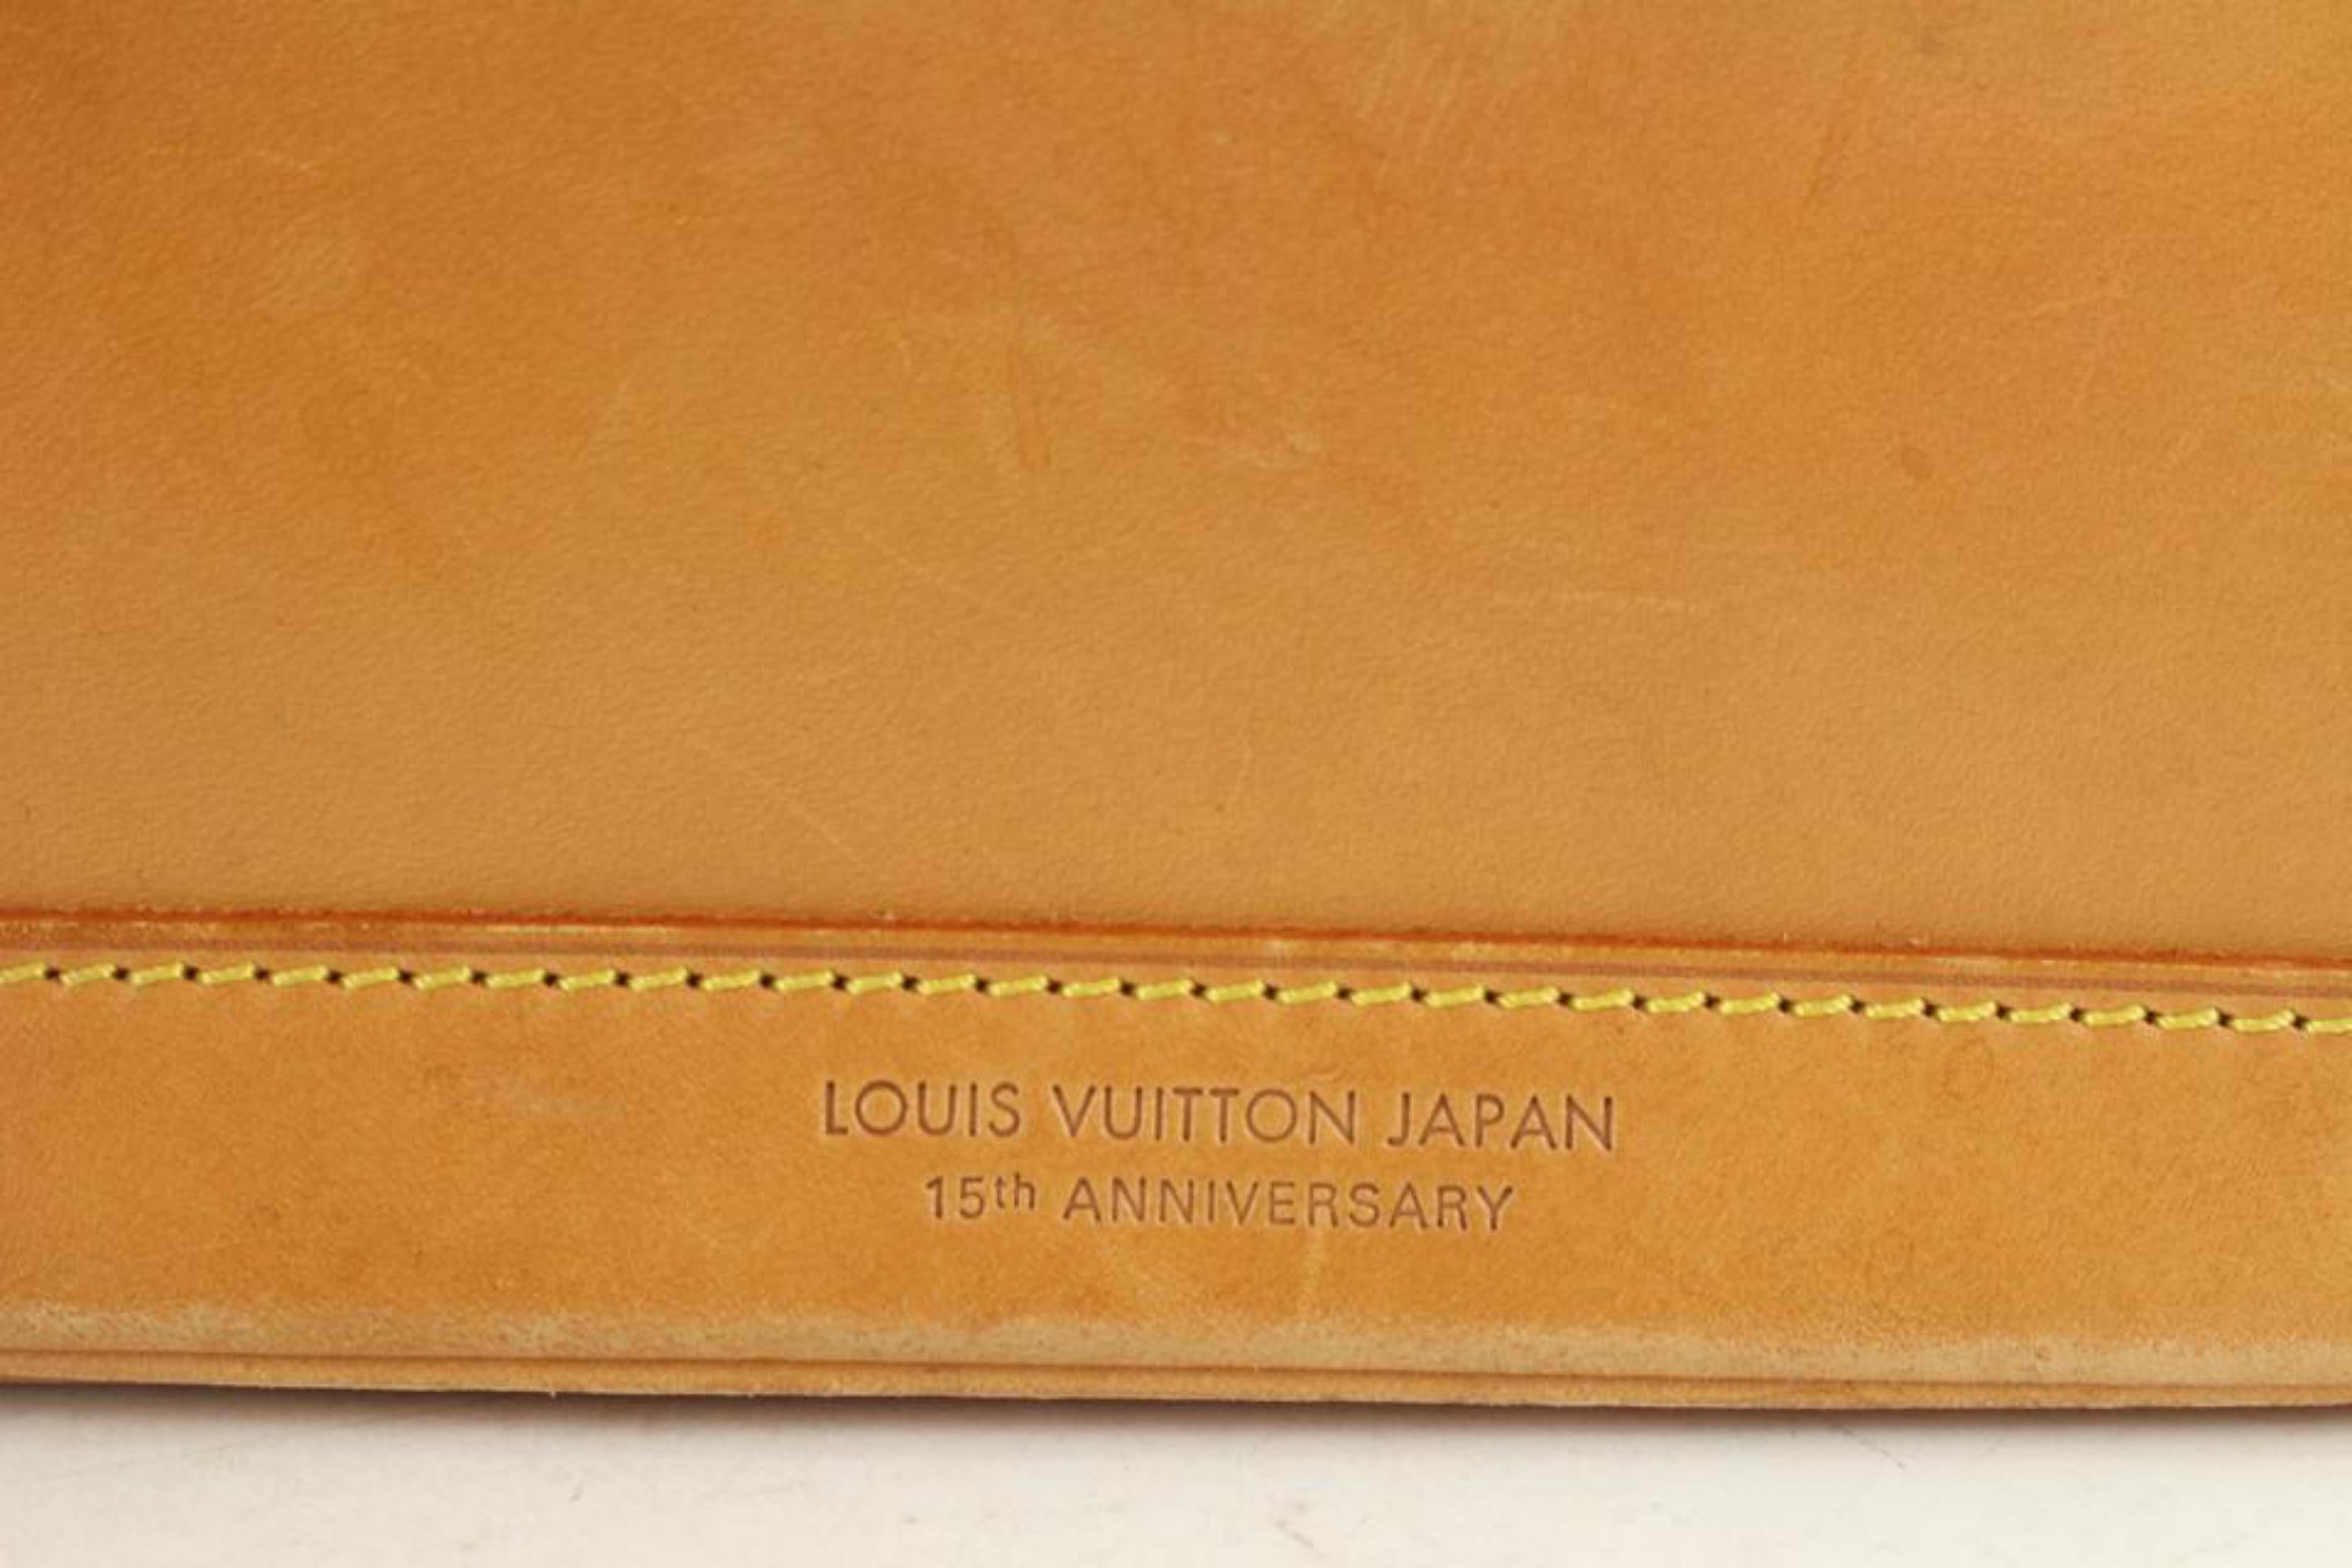 Louis Vuitton - Sac à main « Mini Noe 2way » édition limitée pour le 15e anniversaire du Japon, 1110lv22
Code de date/Numéro de série : A20993
Fabriqué en : France
Mesures : Longueur :  12,5